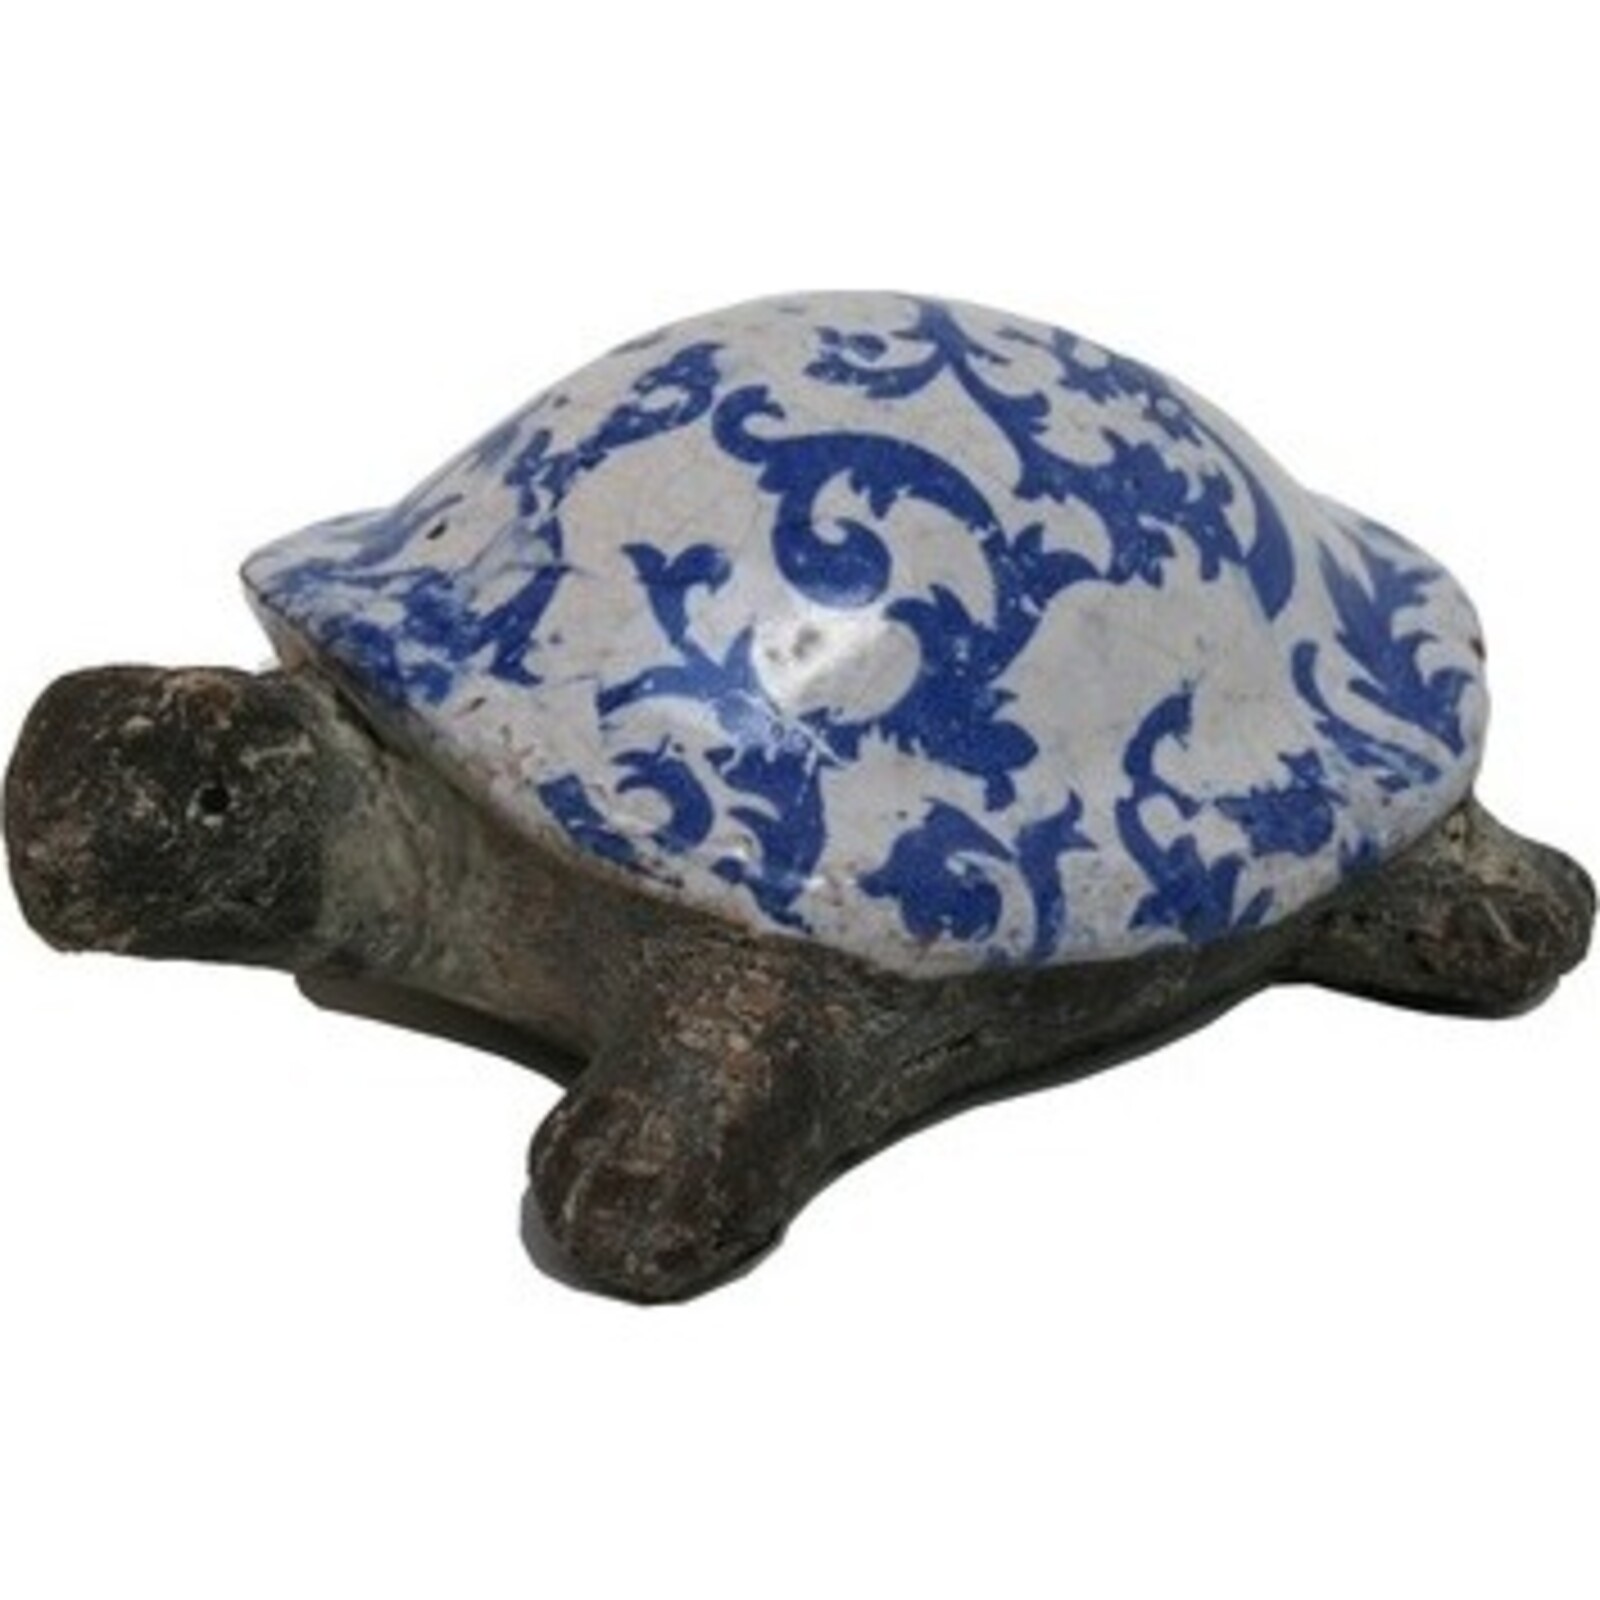 Blue Swirl Turtle